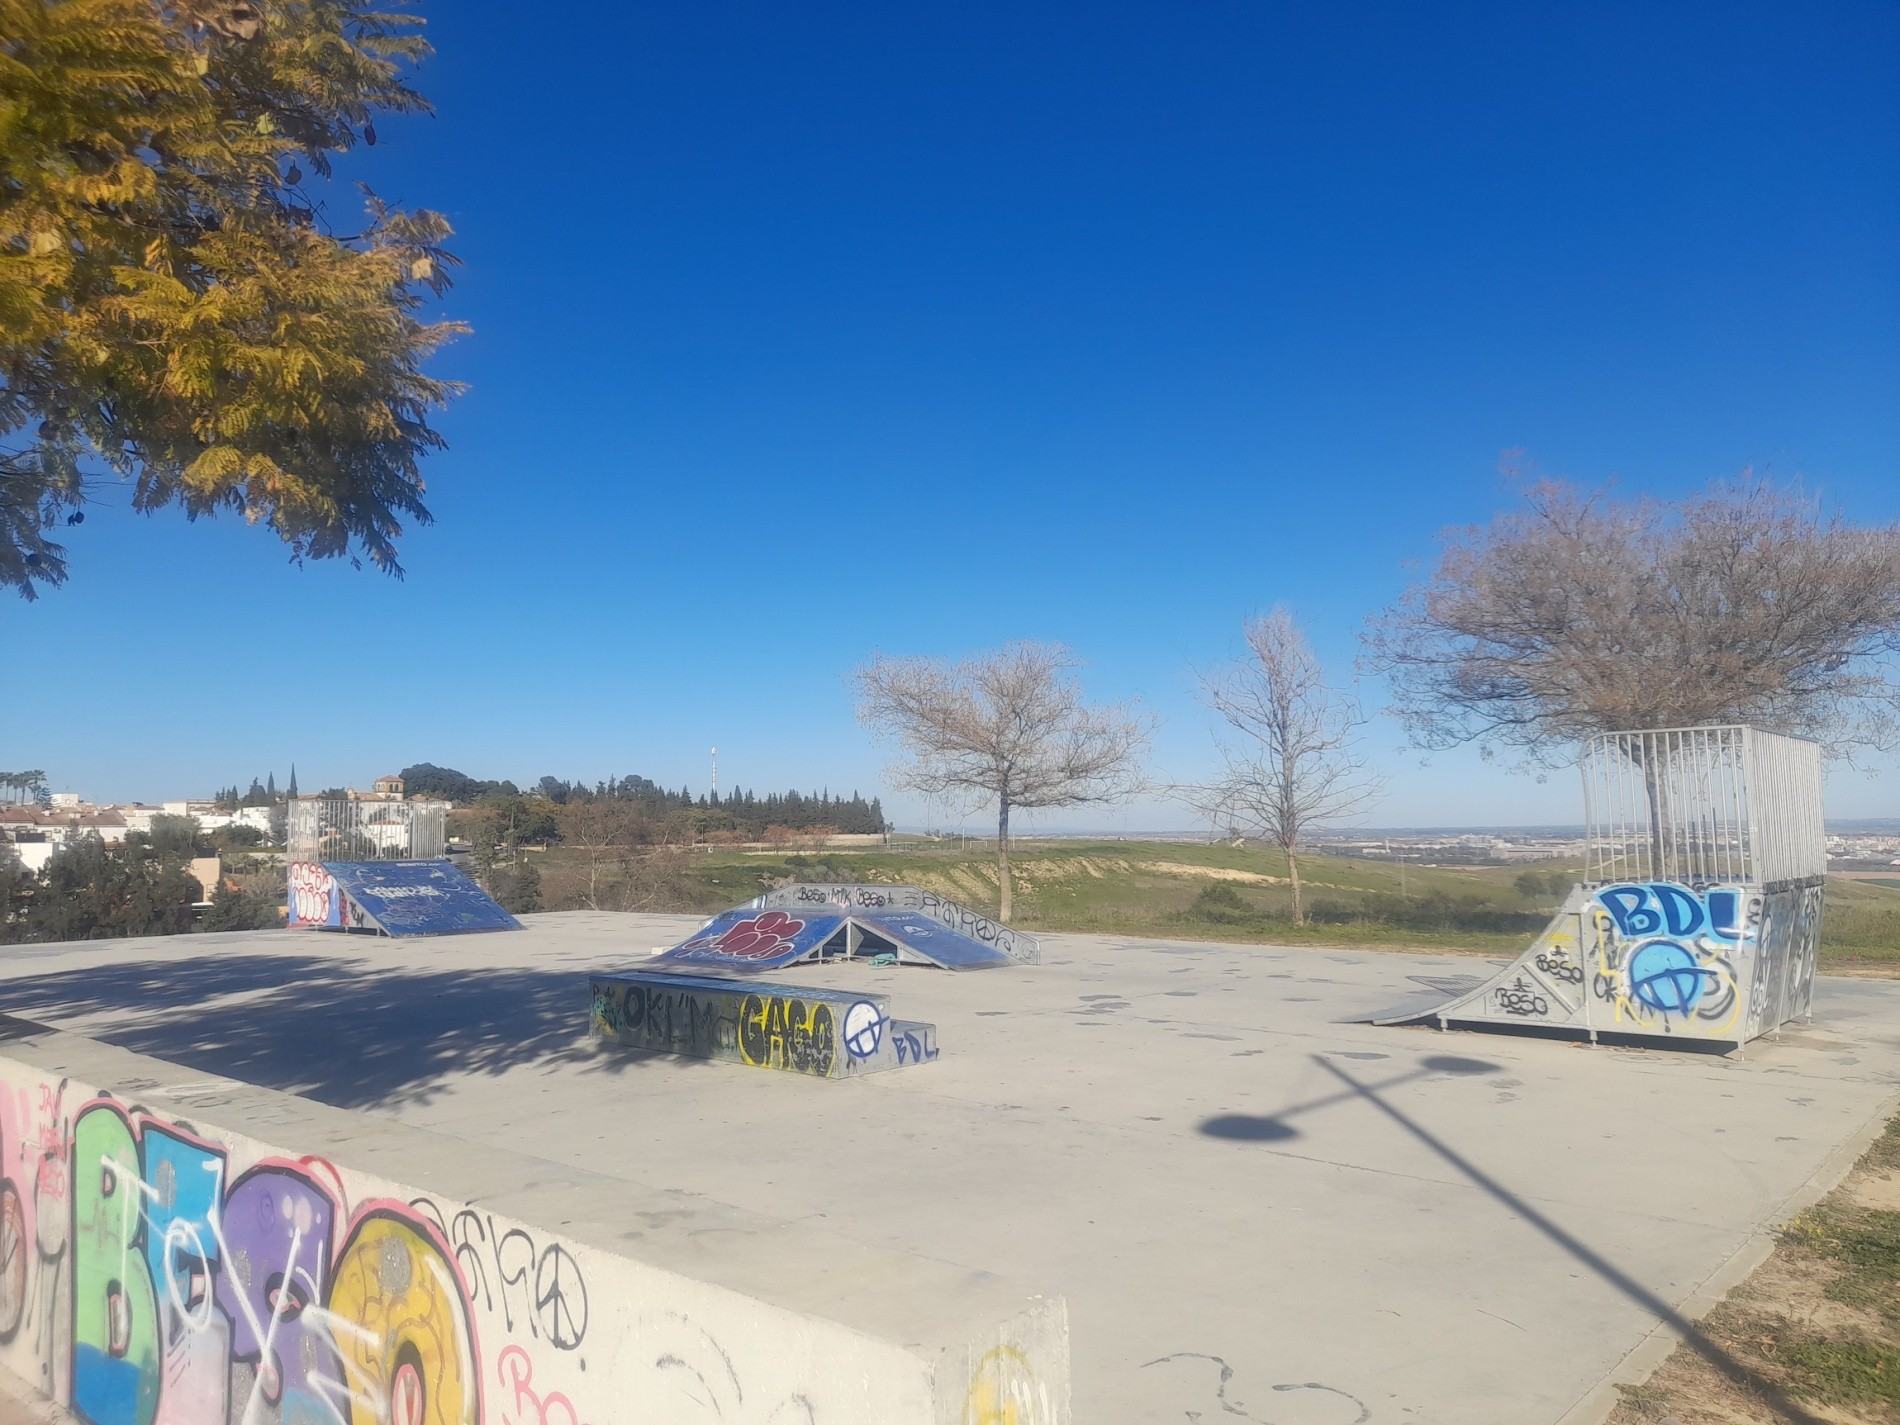 Castilleja de Guzman skatepark